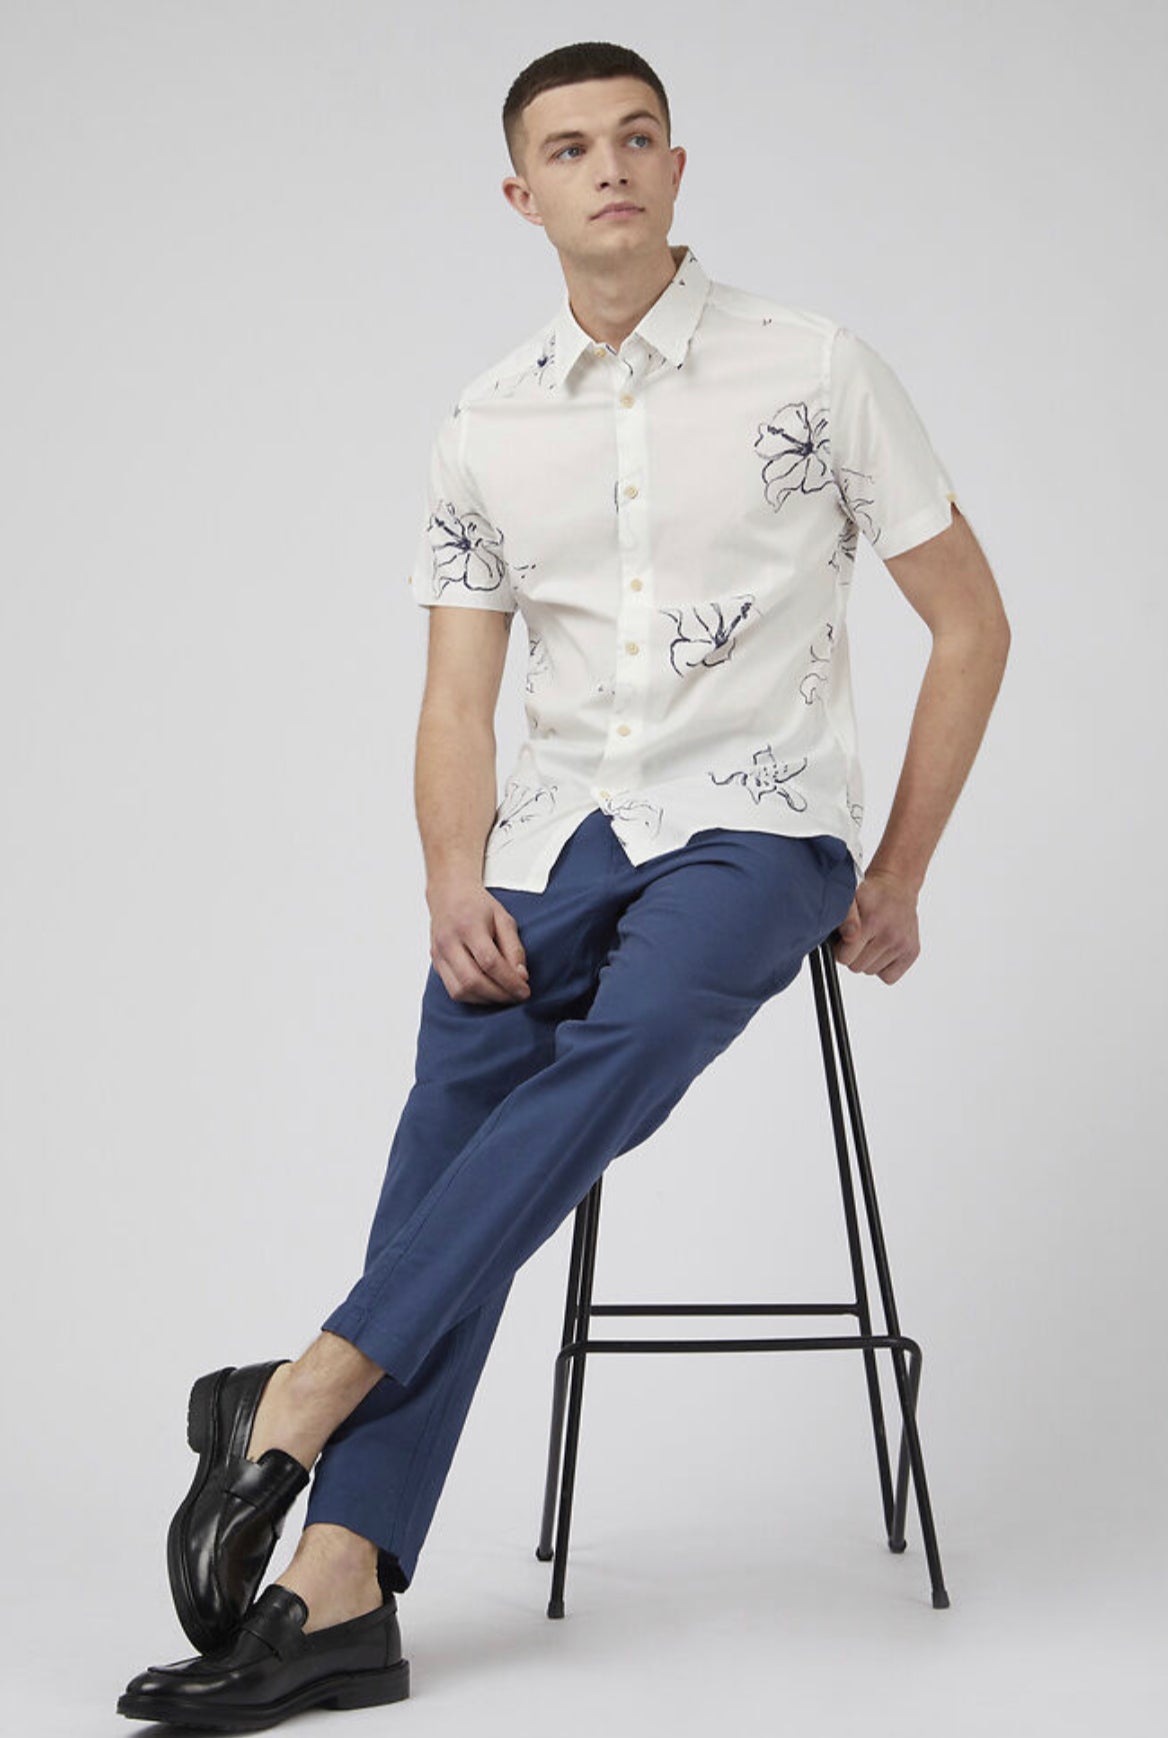 Ben Sherman S/S Linear Floral Shirt 002 035